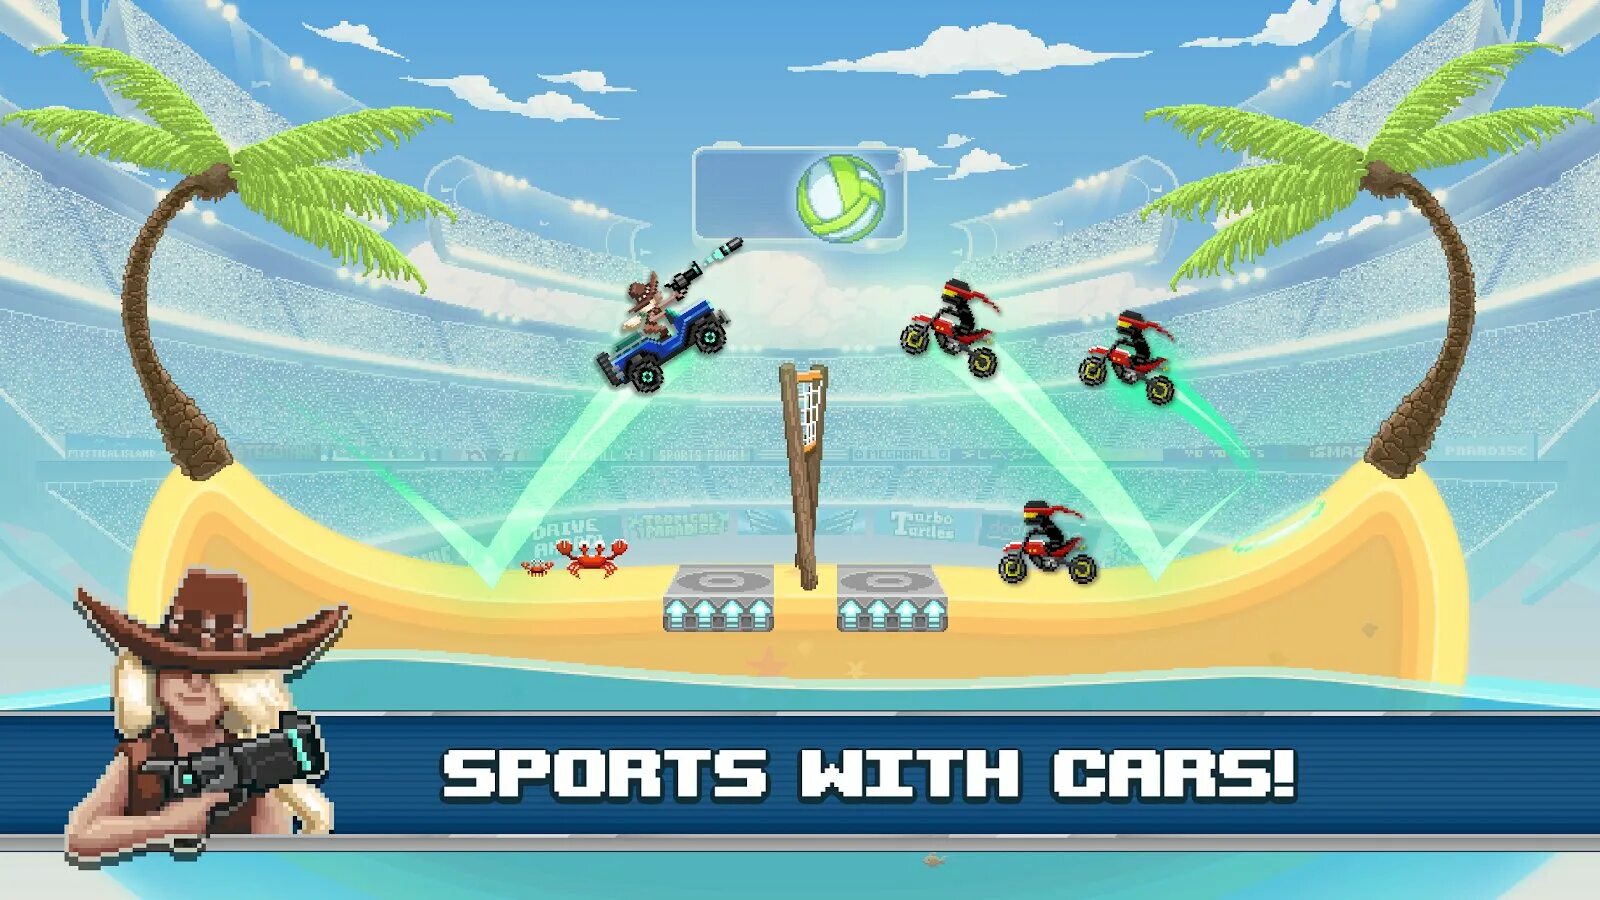 Drive ahead sport. Drive ahead. #Drive игра на андроид. Drive ahead 2. Drive ahead! Sports.